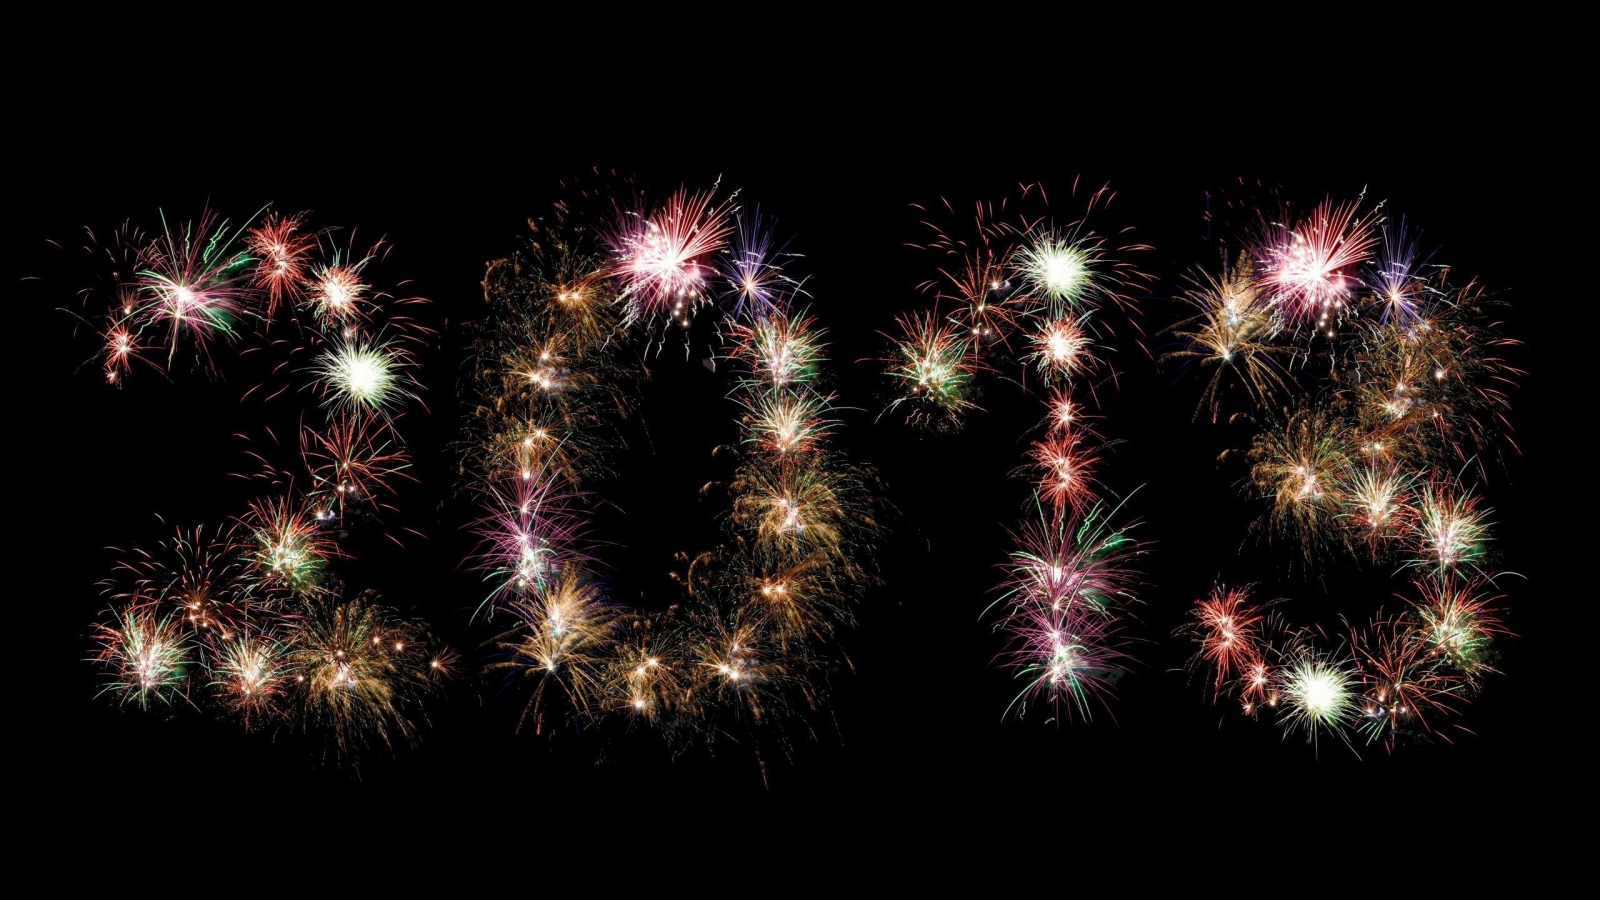 2013 Fireworks for 1600 x 900 HDTV resolution